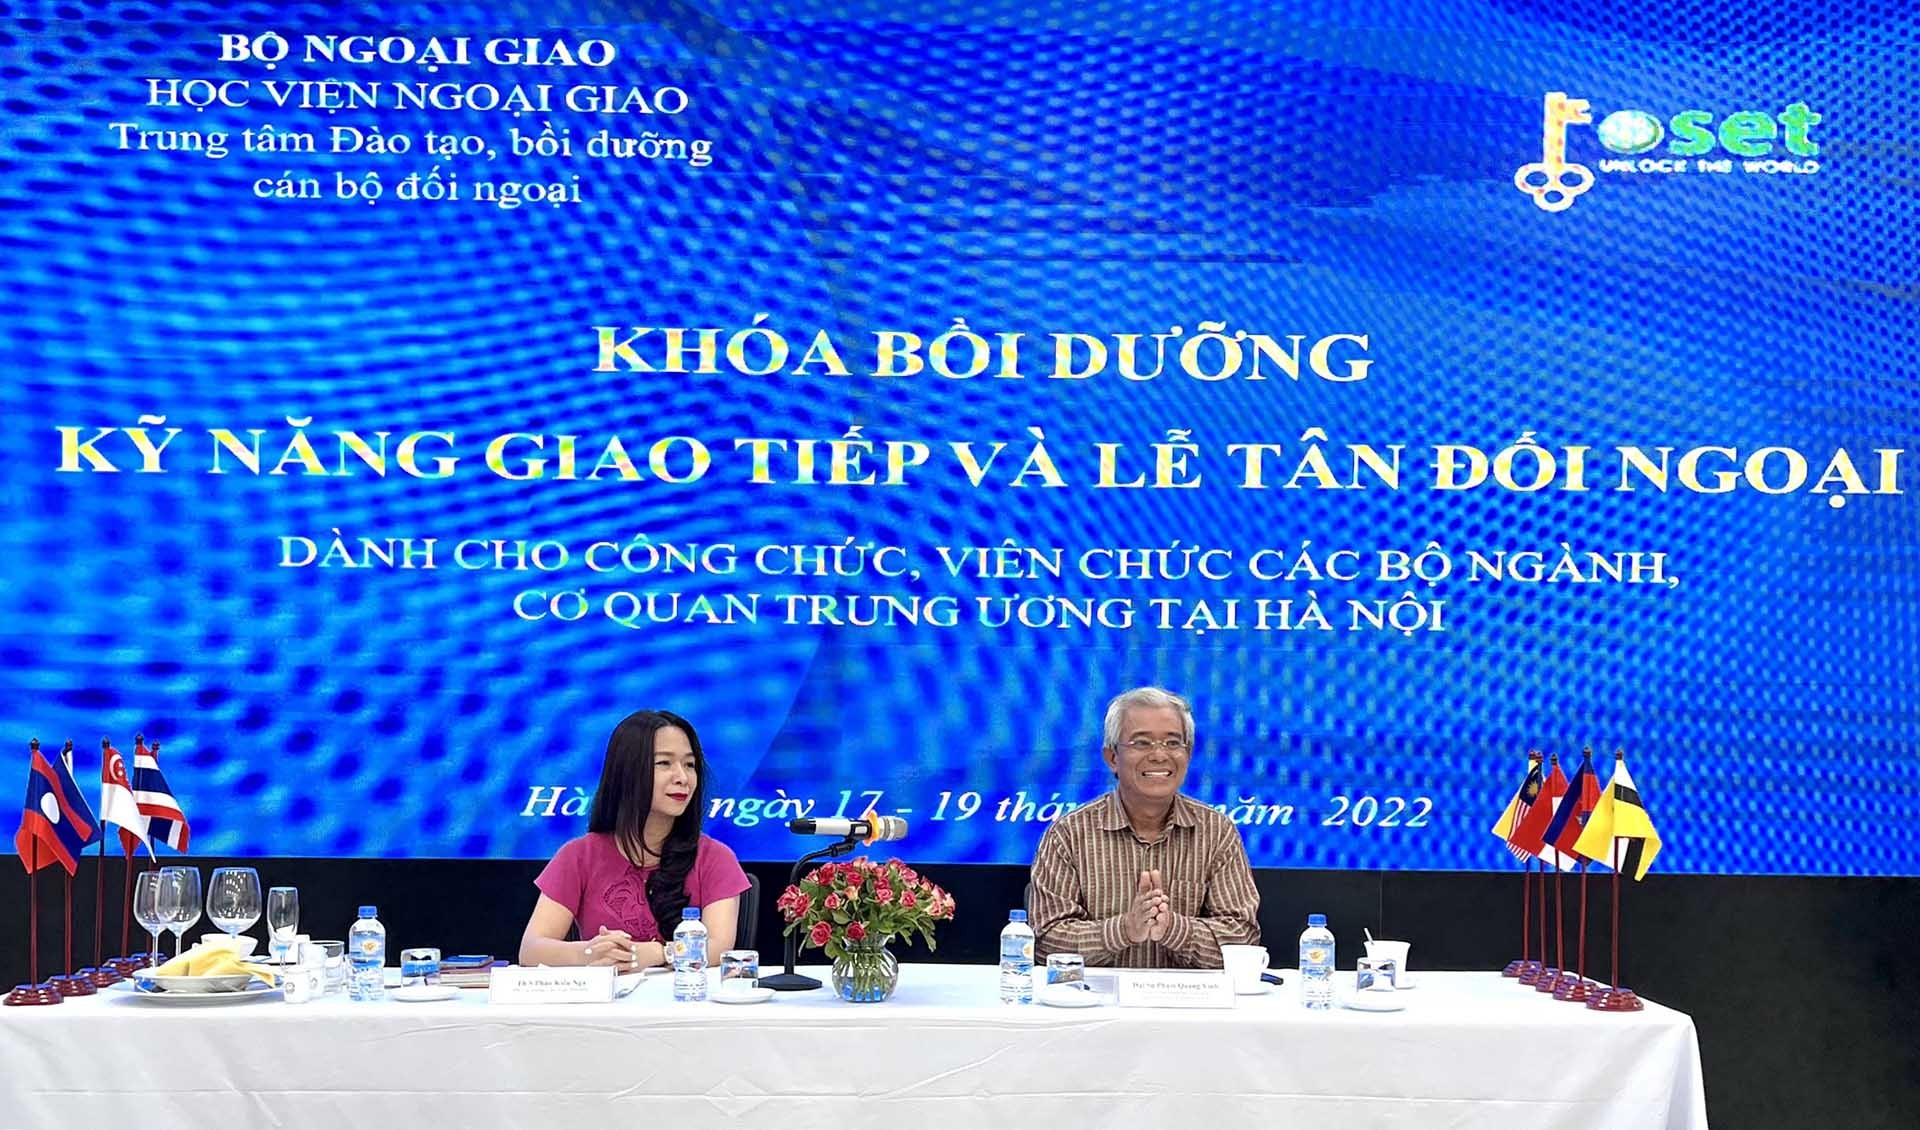 Đại sứ Phạm Quang Vinh và cán bộ Cục Lễ tân Nhà nước chia sẻ về quy trình, kinh nghiệm và thực tế khi tổ chức, tham gia và thực hiện các hoạt động giao tiếp, lễ tân đối ngoại.